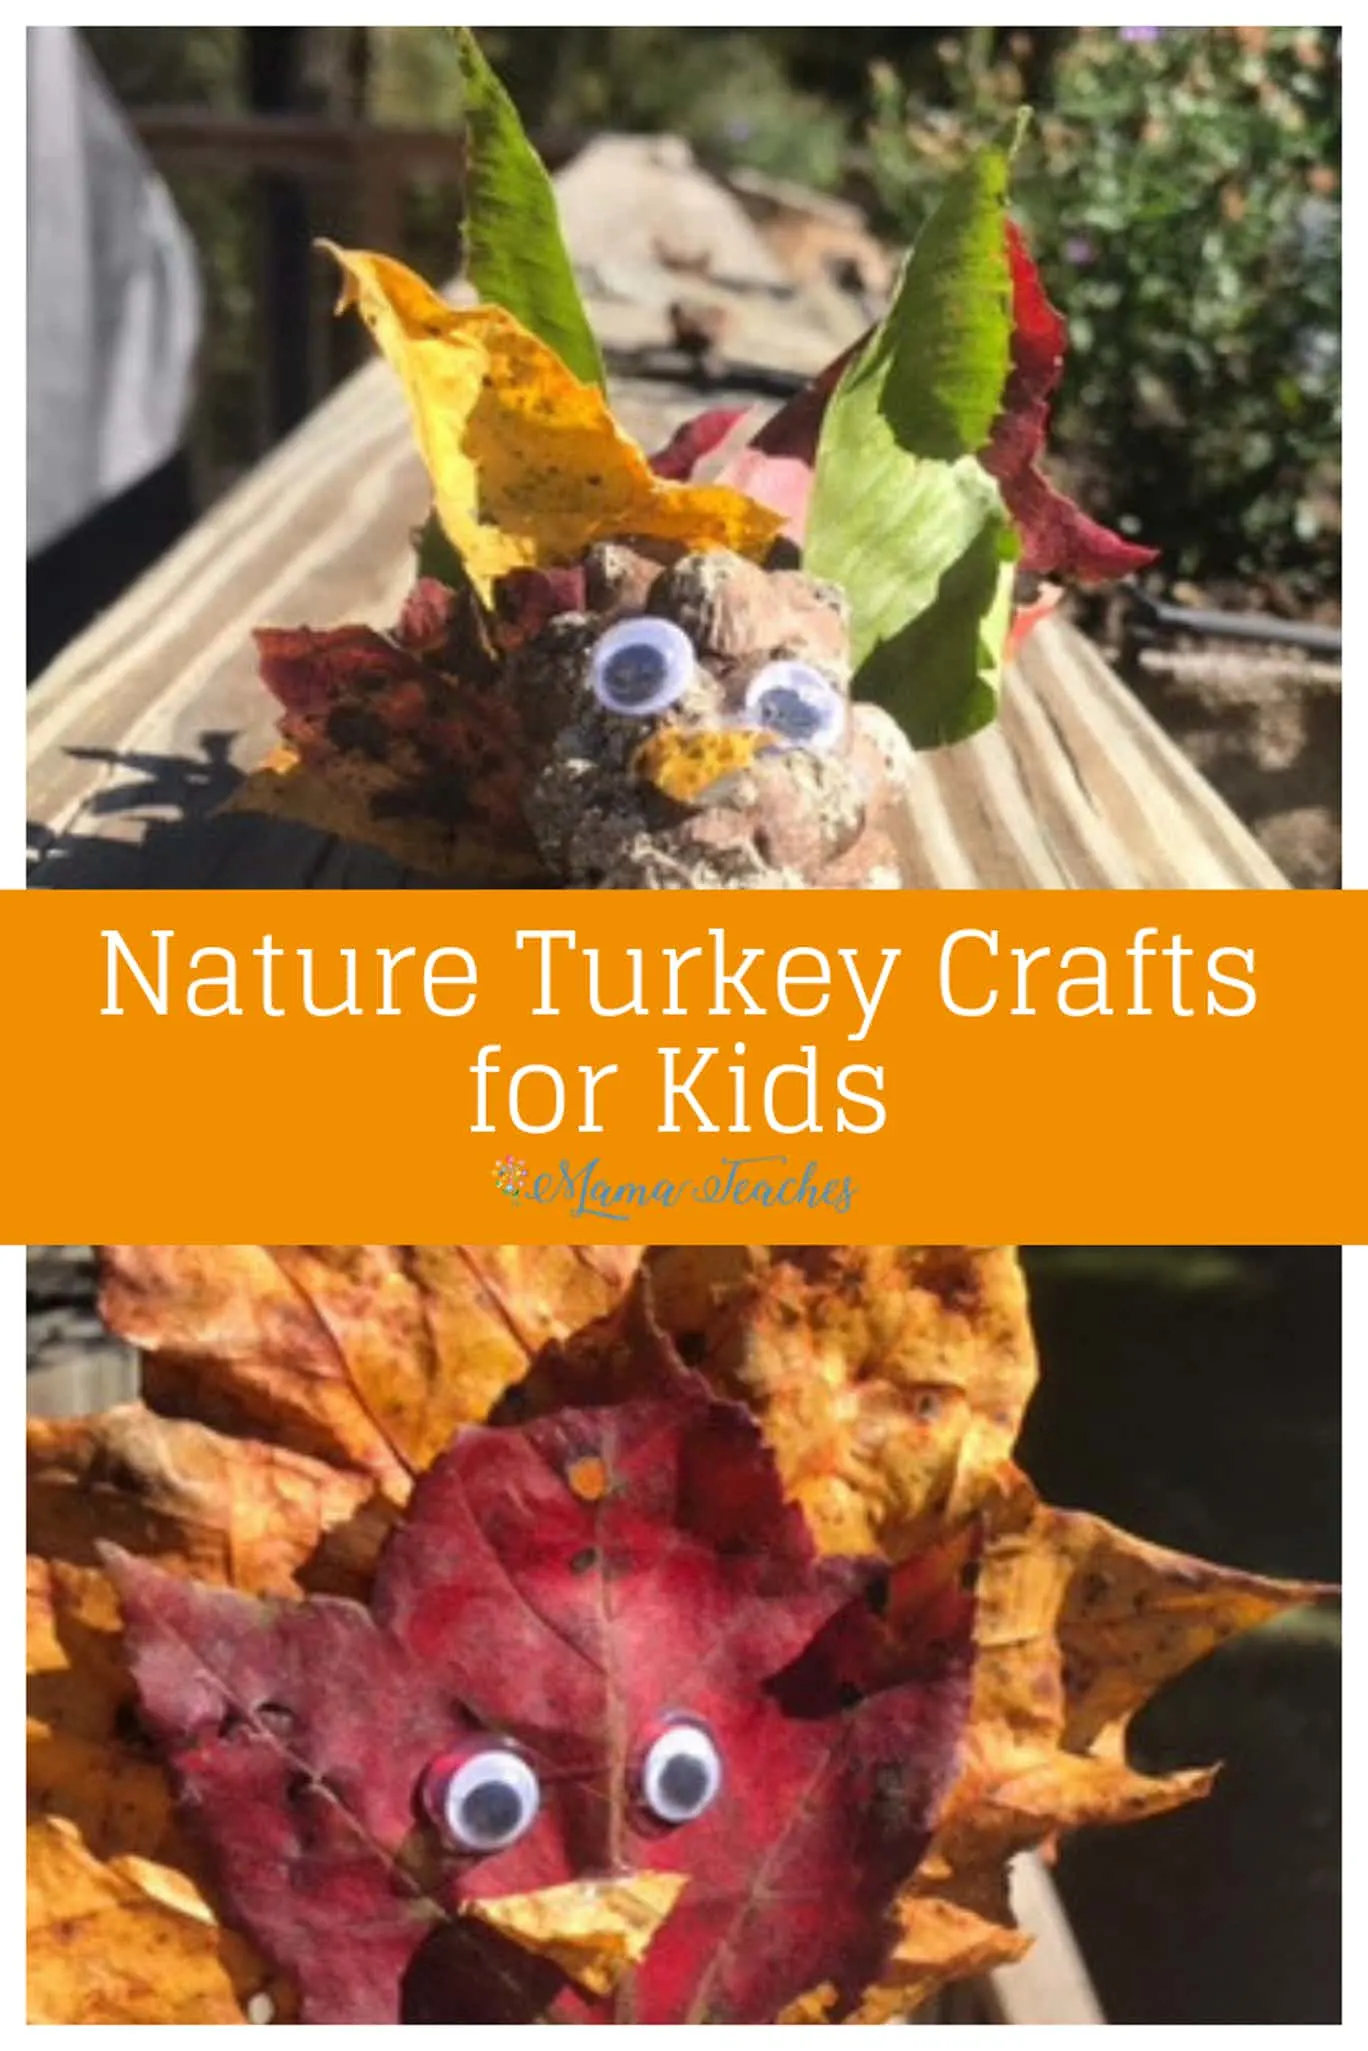 Turkey Crafts for Kids